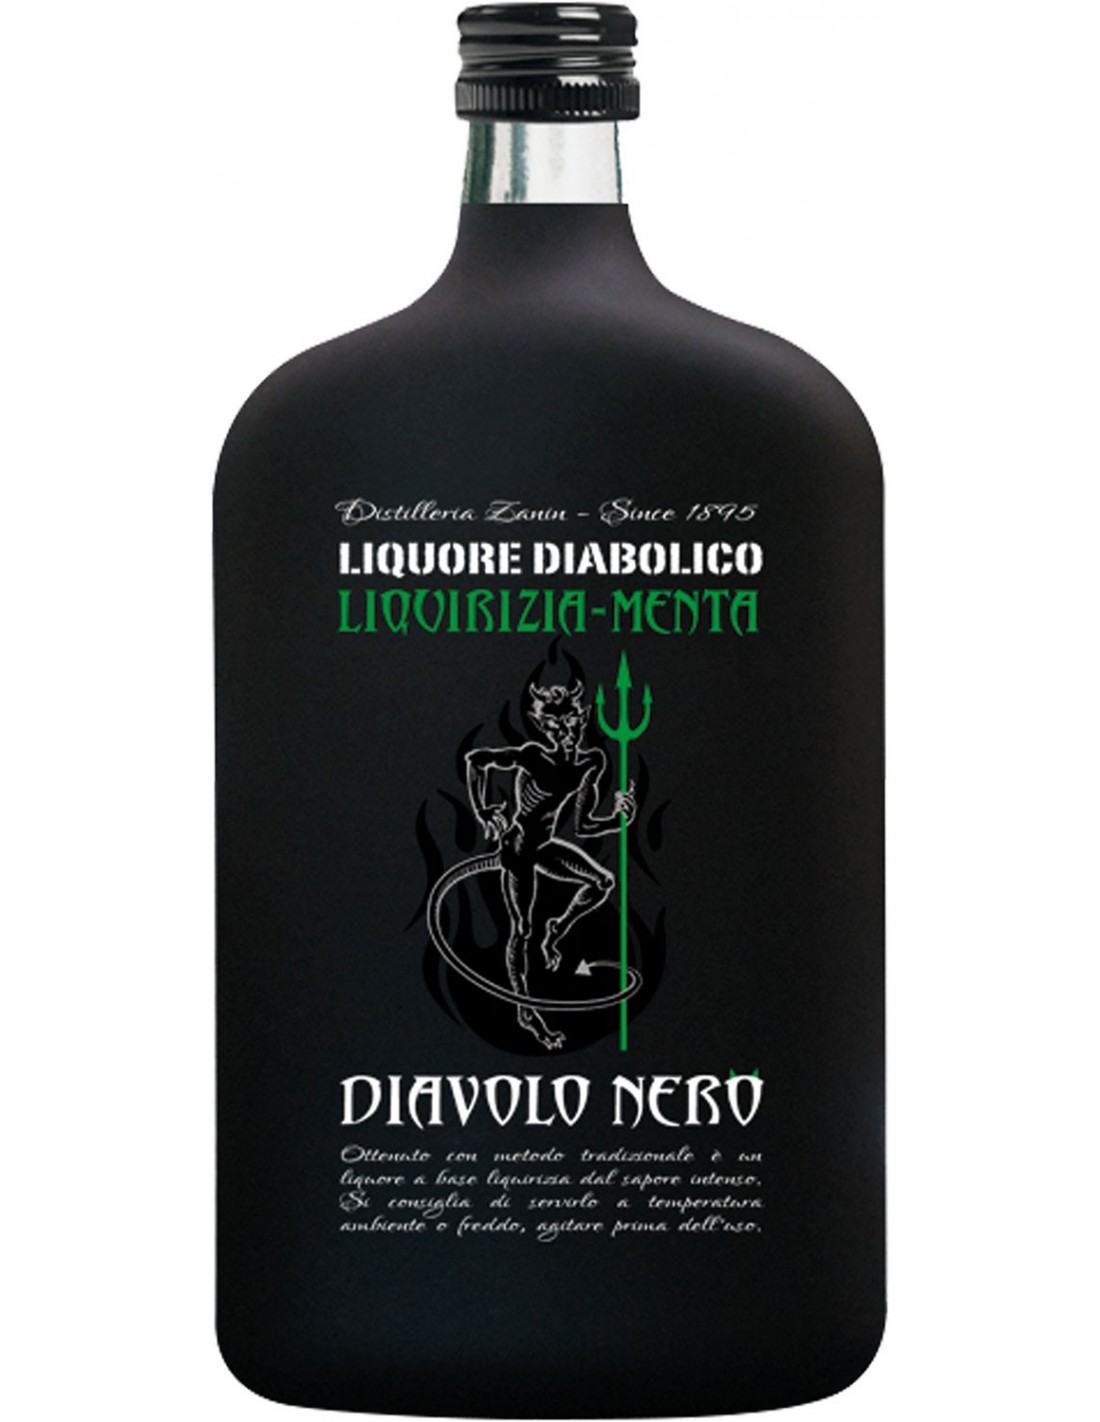 Lichior Diavolo Nero Menta, 25% alc., 0.7L, Italia